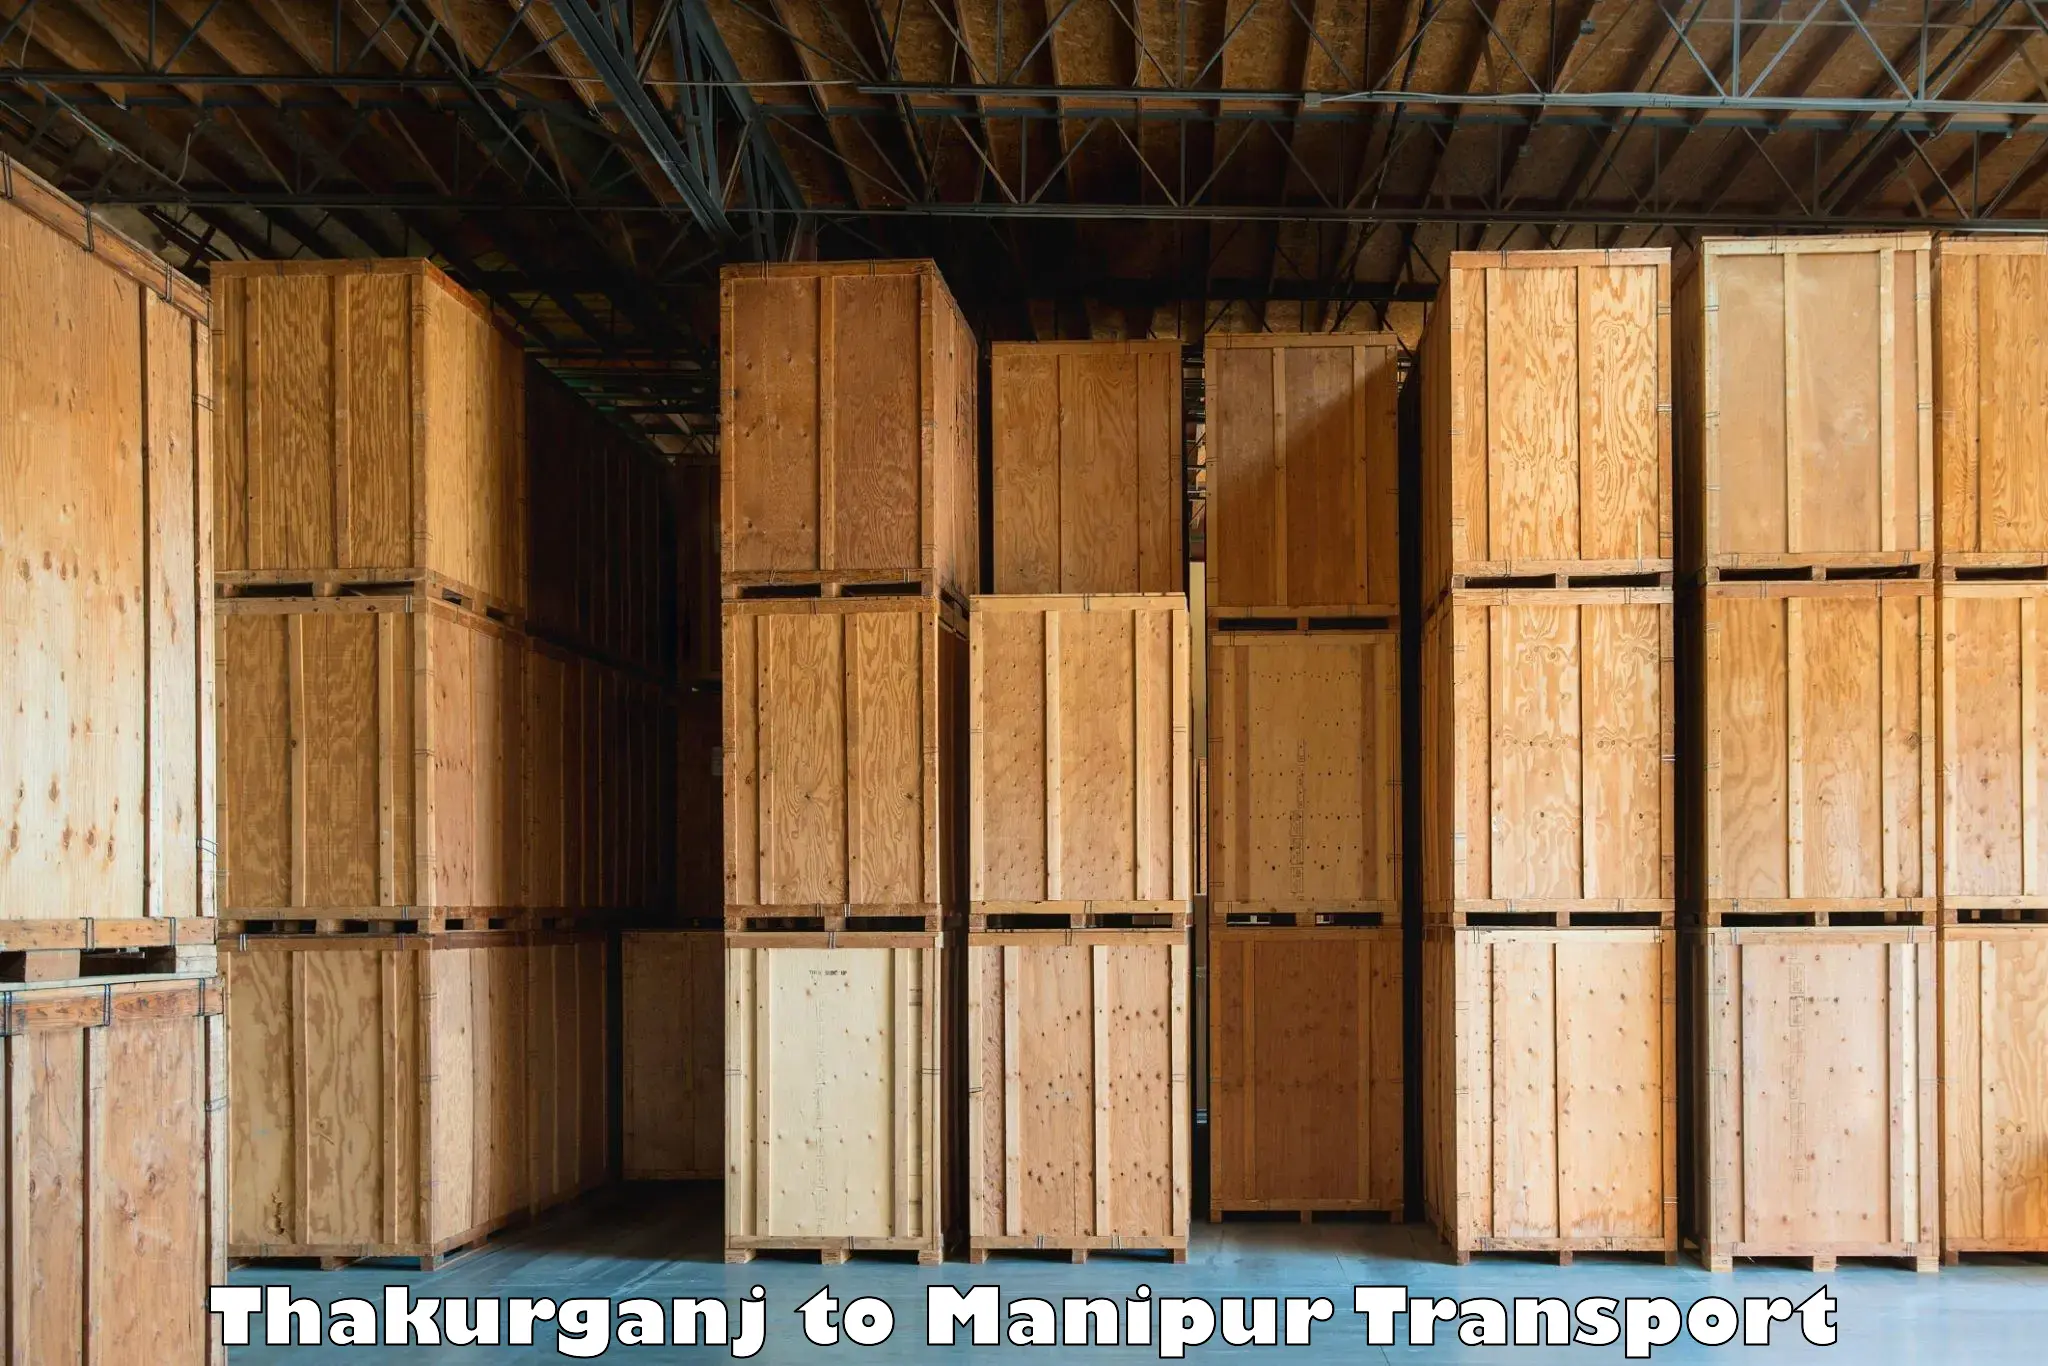 Online transport service Thakurganj to Moirang